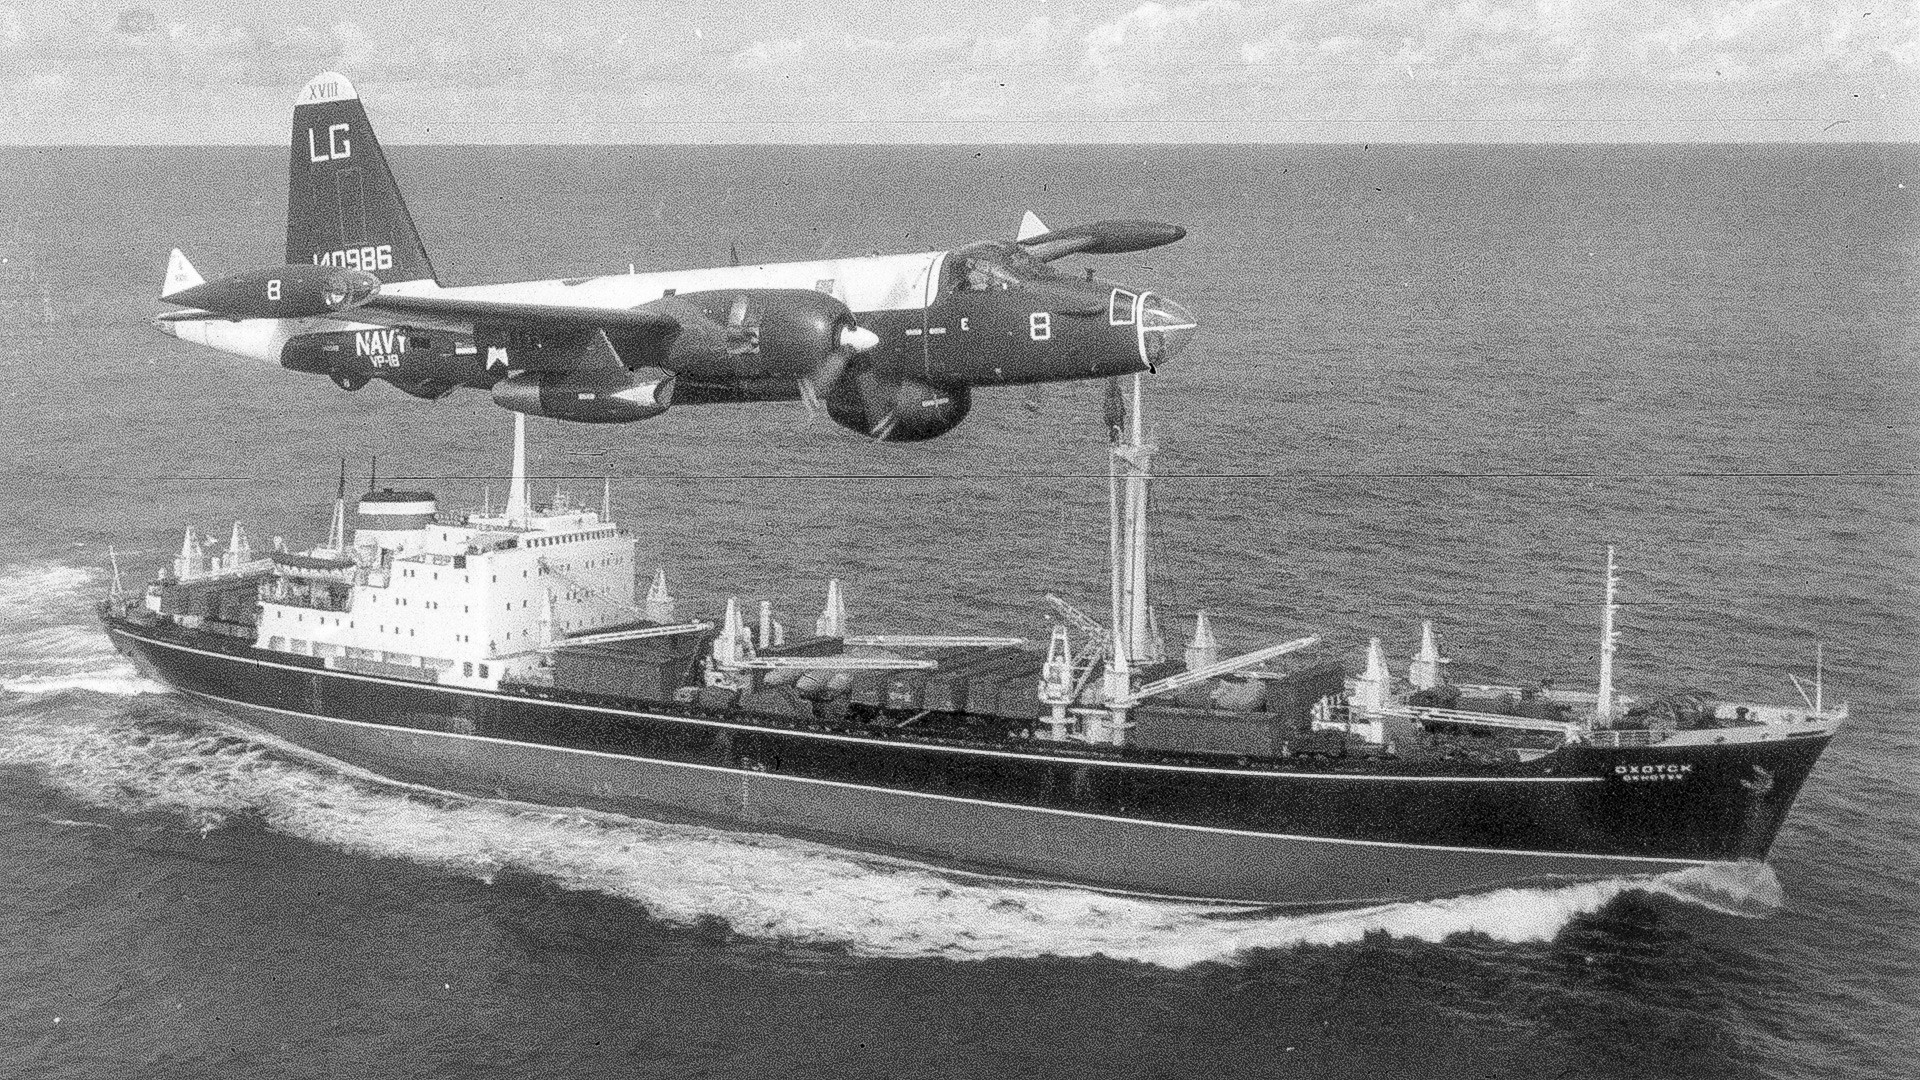 Ameriško patruljno letalo P2V Neptune preletava sovjetsko tovorno ladjo v času kubanske raketne krize, 1962.